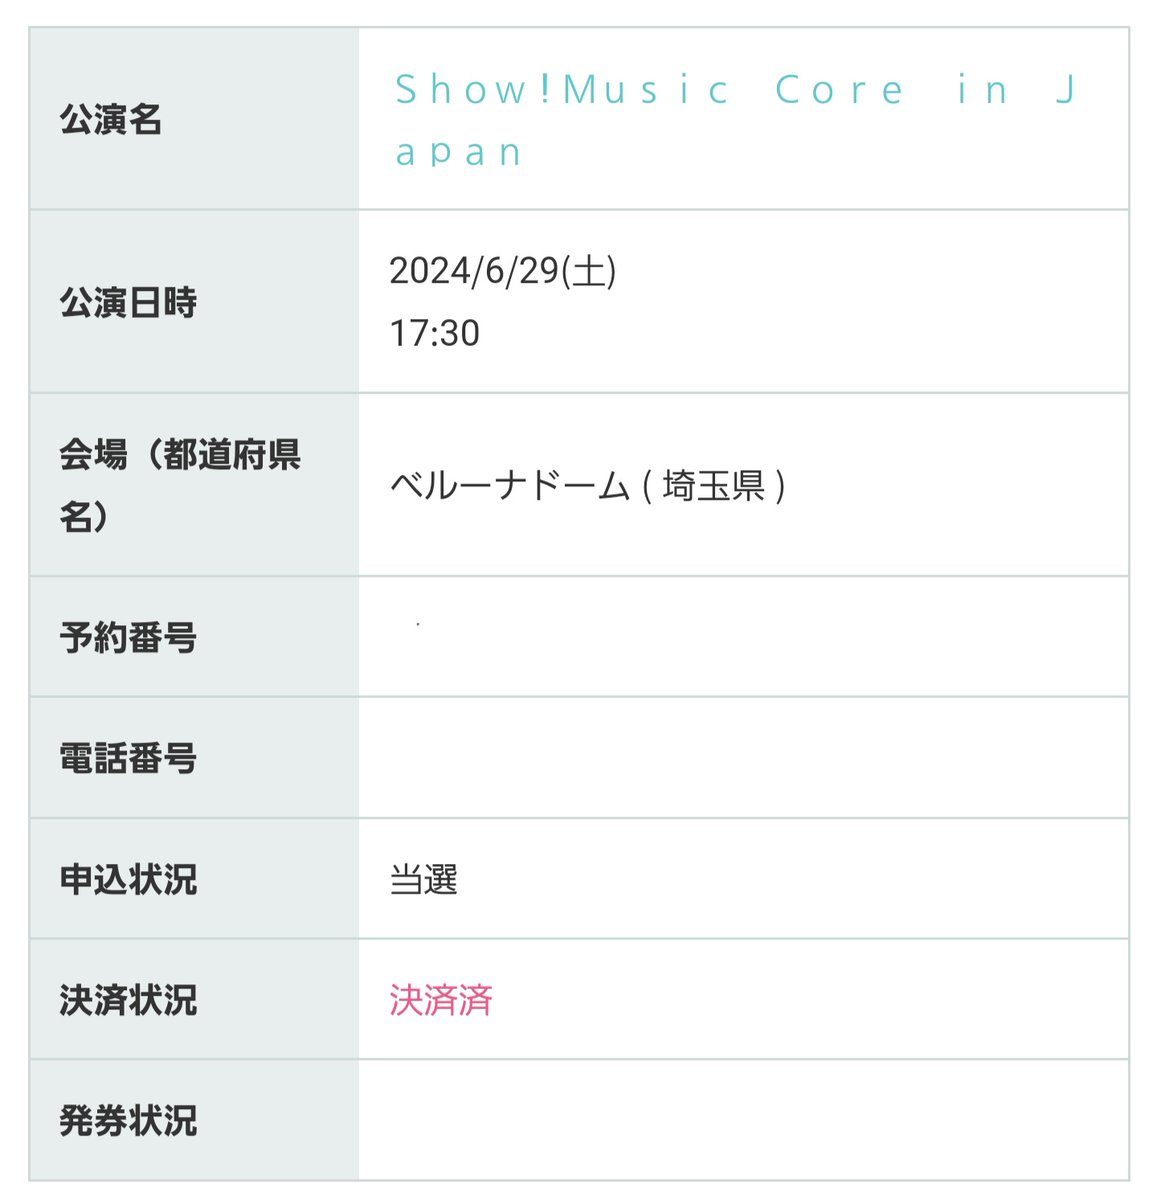 2024 Show! Music Core in JAPAN
ベルーナドーム ウマチュン

譲
6/29(土) 2連番

求
定価＋手数料

友人と重複したためお譲り先を探しています！
同行者分を分配、もしくは同時入場で端末貸出予定

DM気づかないこと多いのでリプください🙇‍♀️

#SHOW_MUSIC_CORE_JPN #ShowMusicCore #ウマチュン